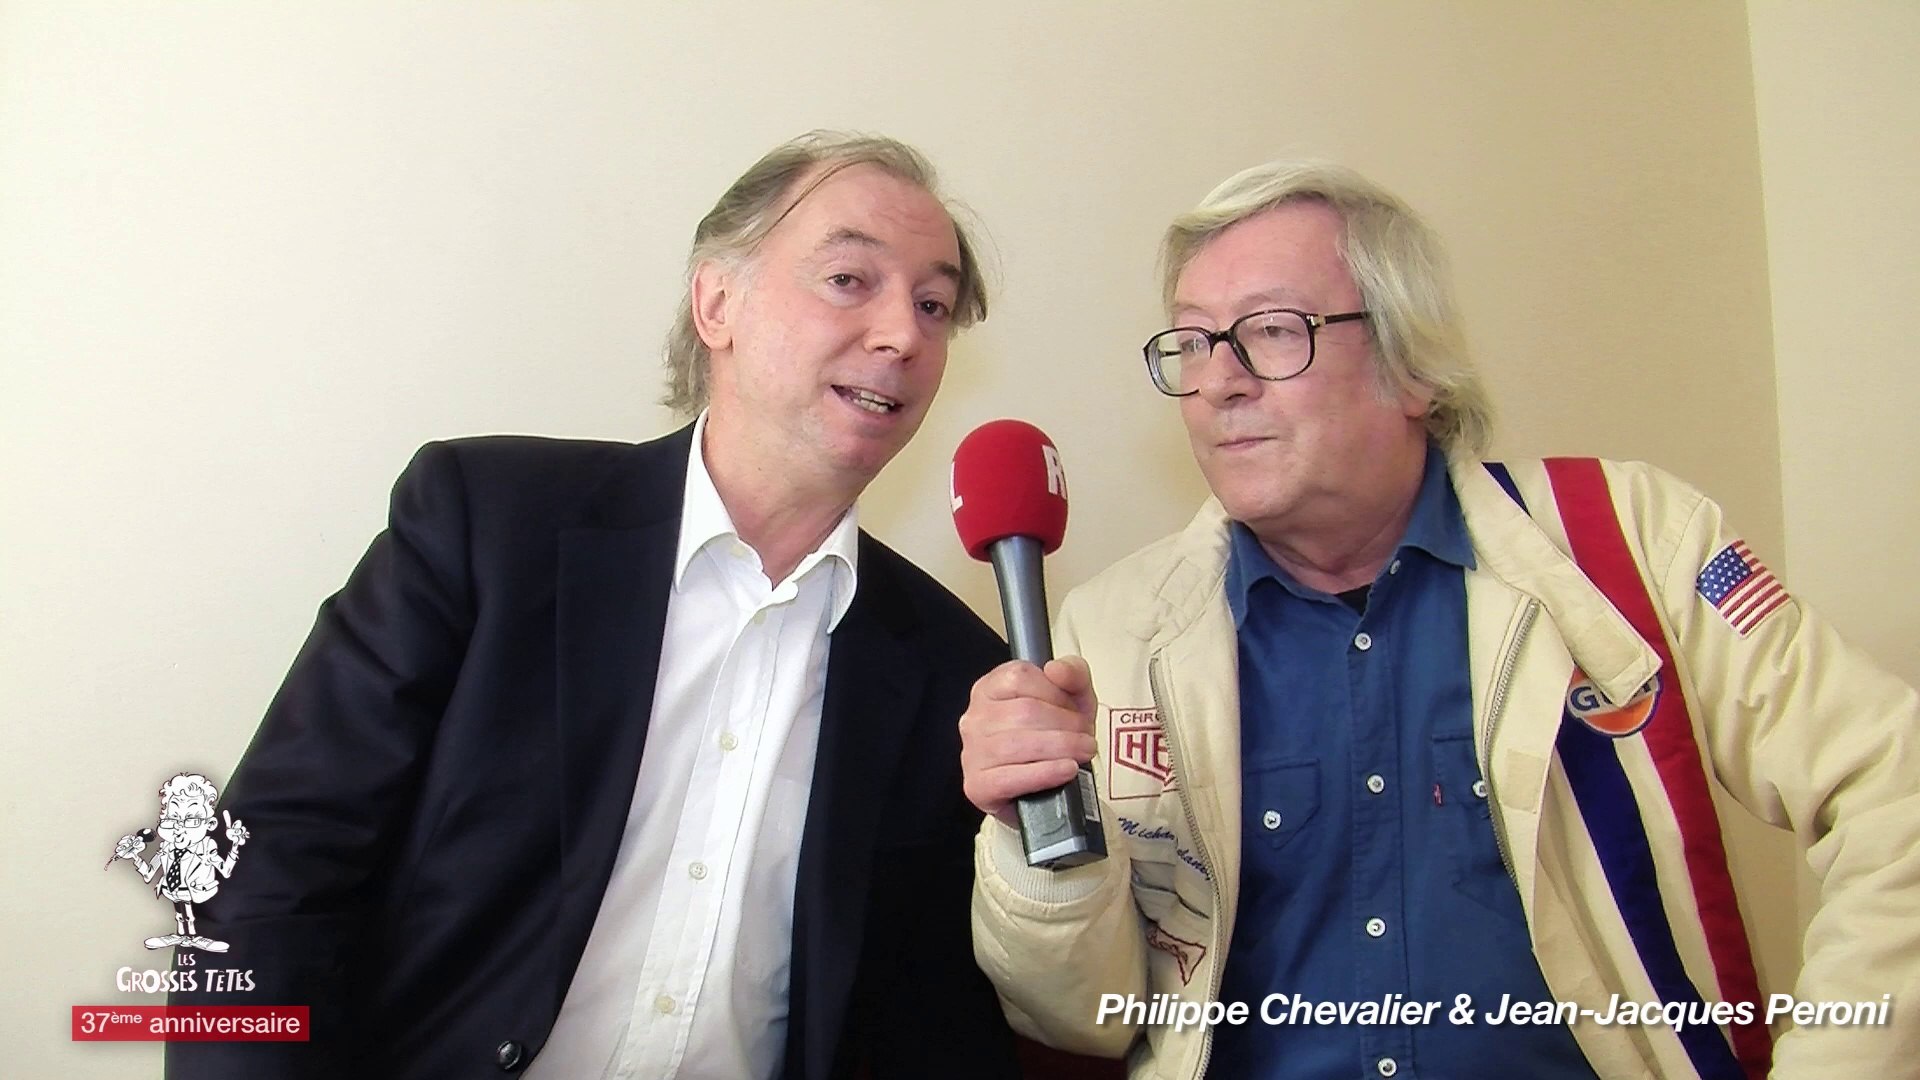 Philippe Chevalier & Jean-Jacques Peroni revisitent leurs souvenirs à  l'occasion du 37ème anniversaire des Grosses Têtes - Vidéo Dailymotion